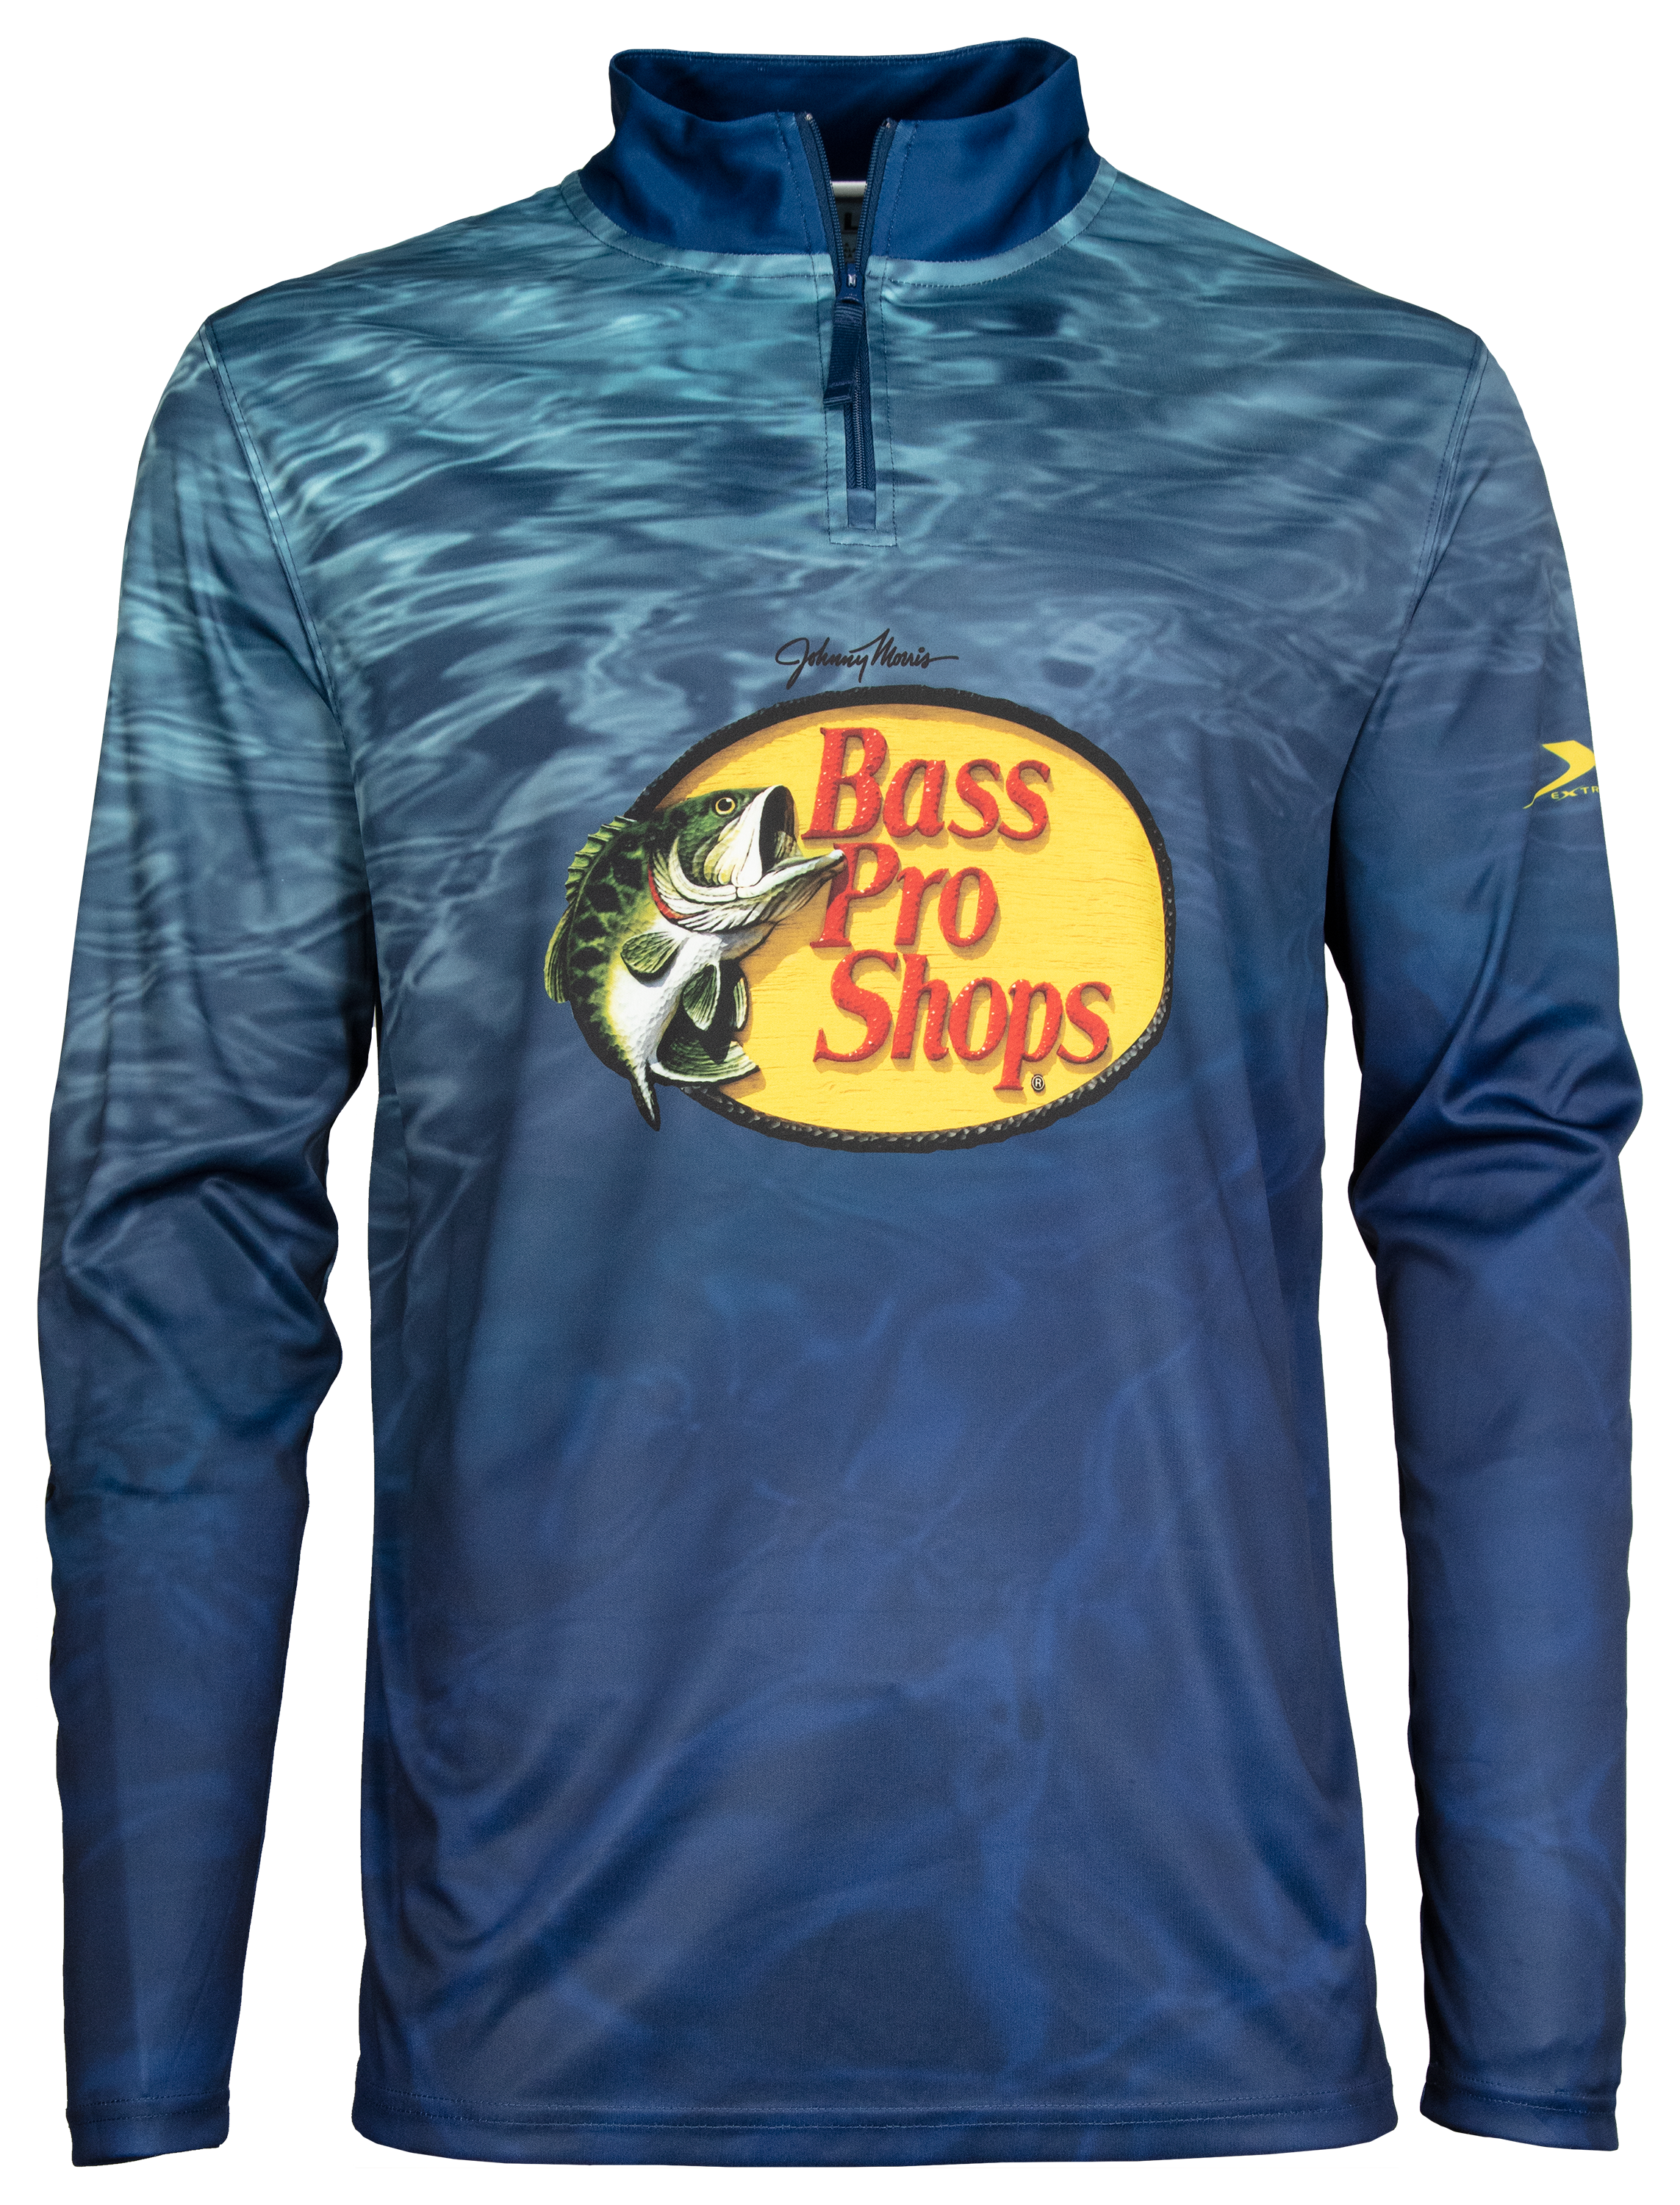 Bass Pro Shops Long-Sleeve Performance Shirt for Men - TrueTimber